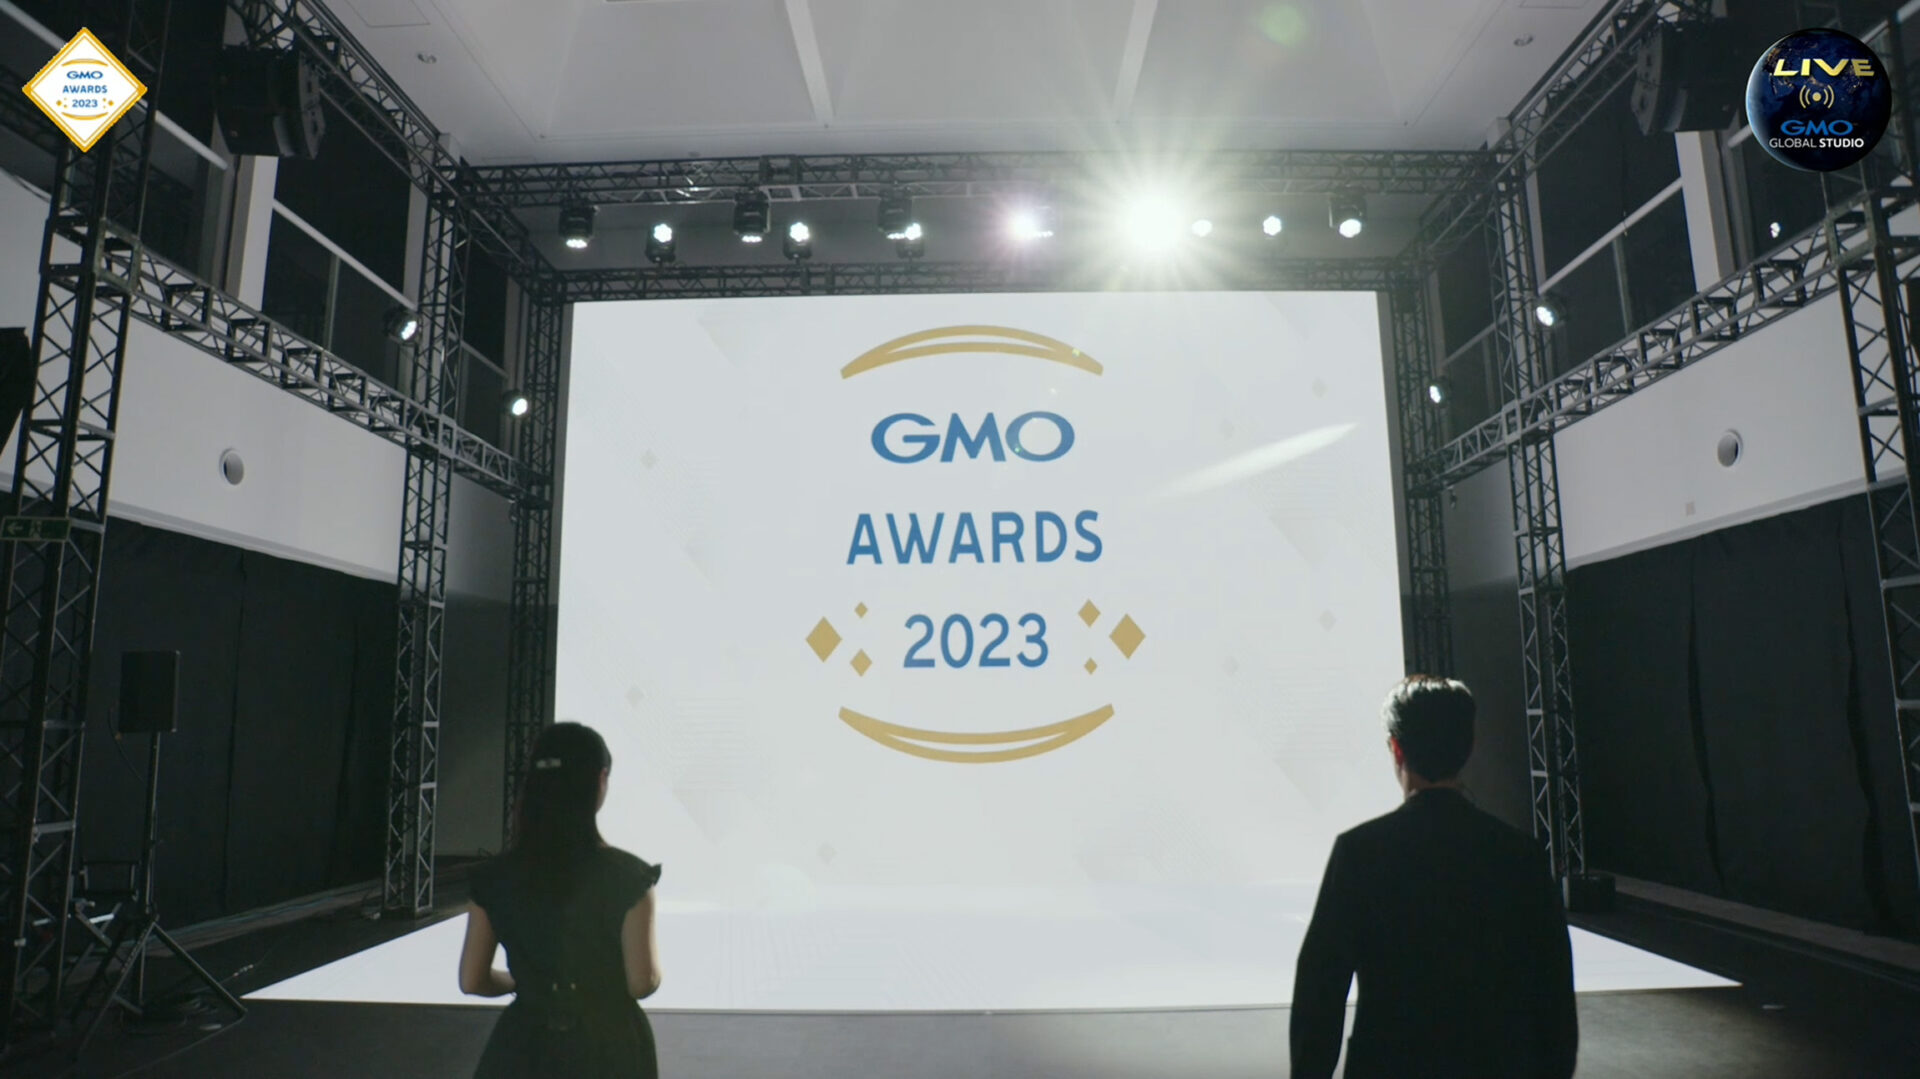 GMO AWARDS 2023